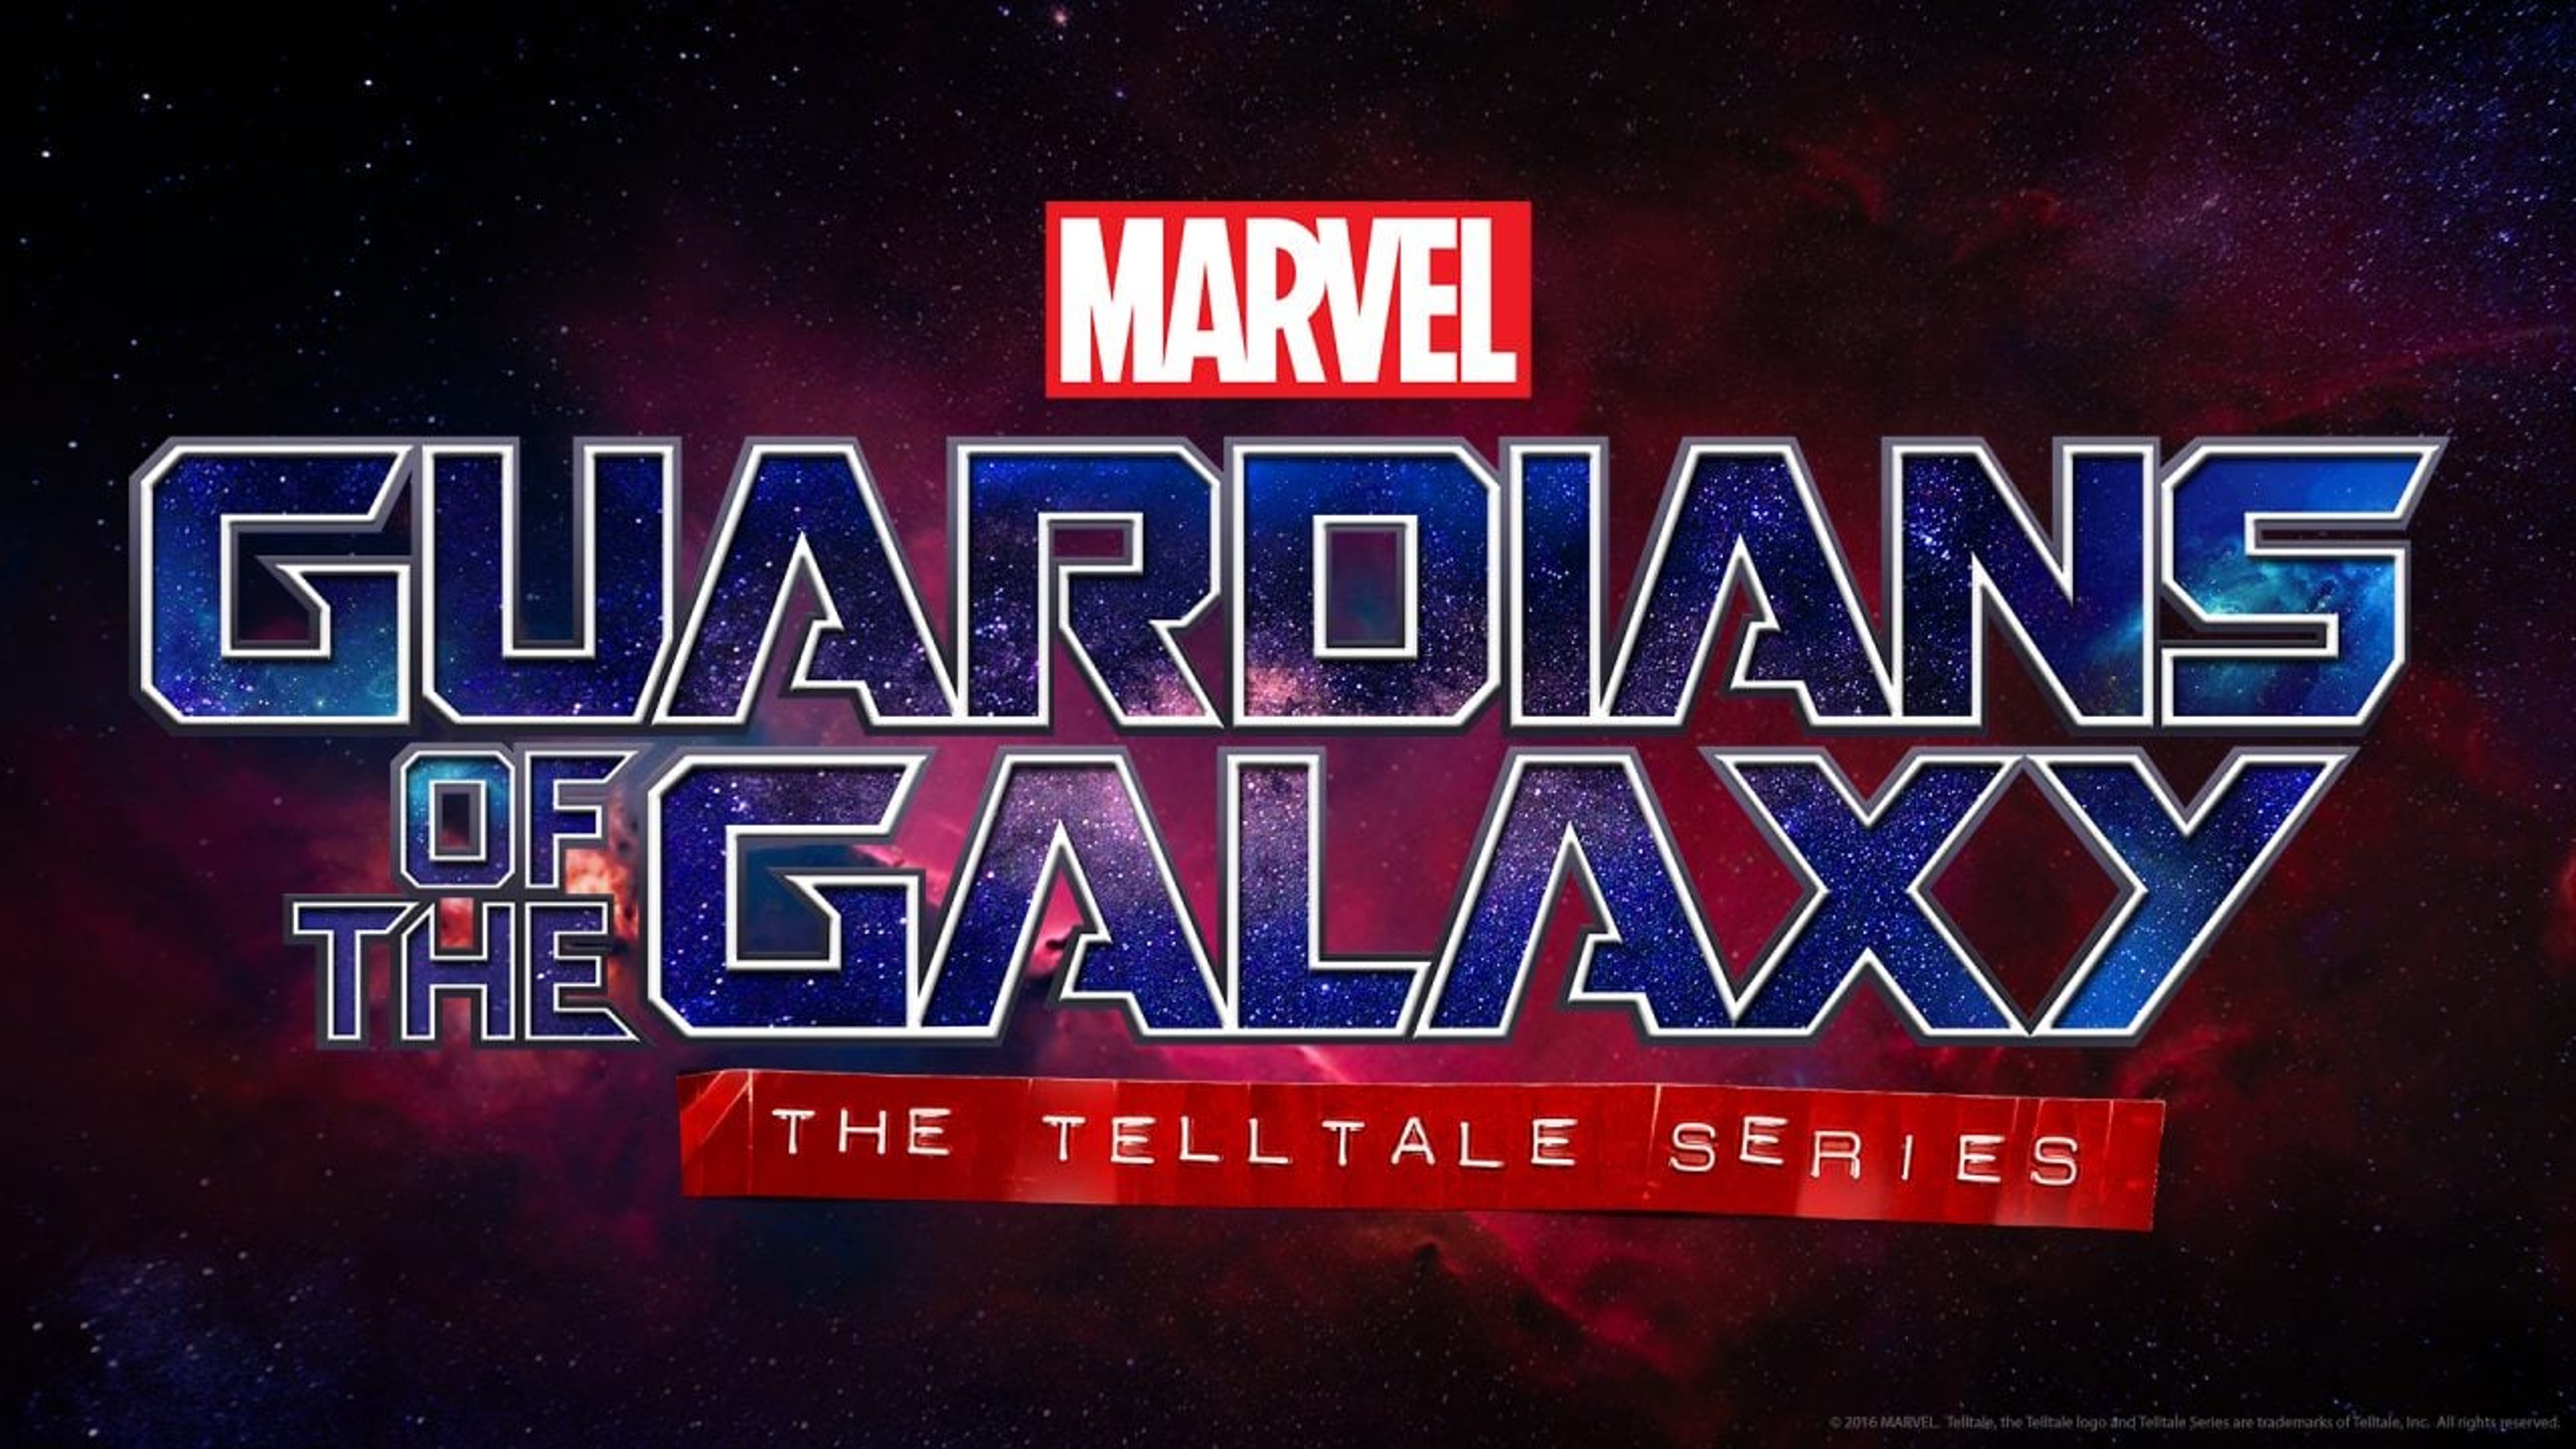 Marvel Guardiani della Galassia: opinioni sulla prima puntata Telltale